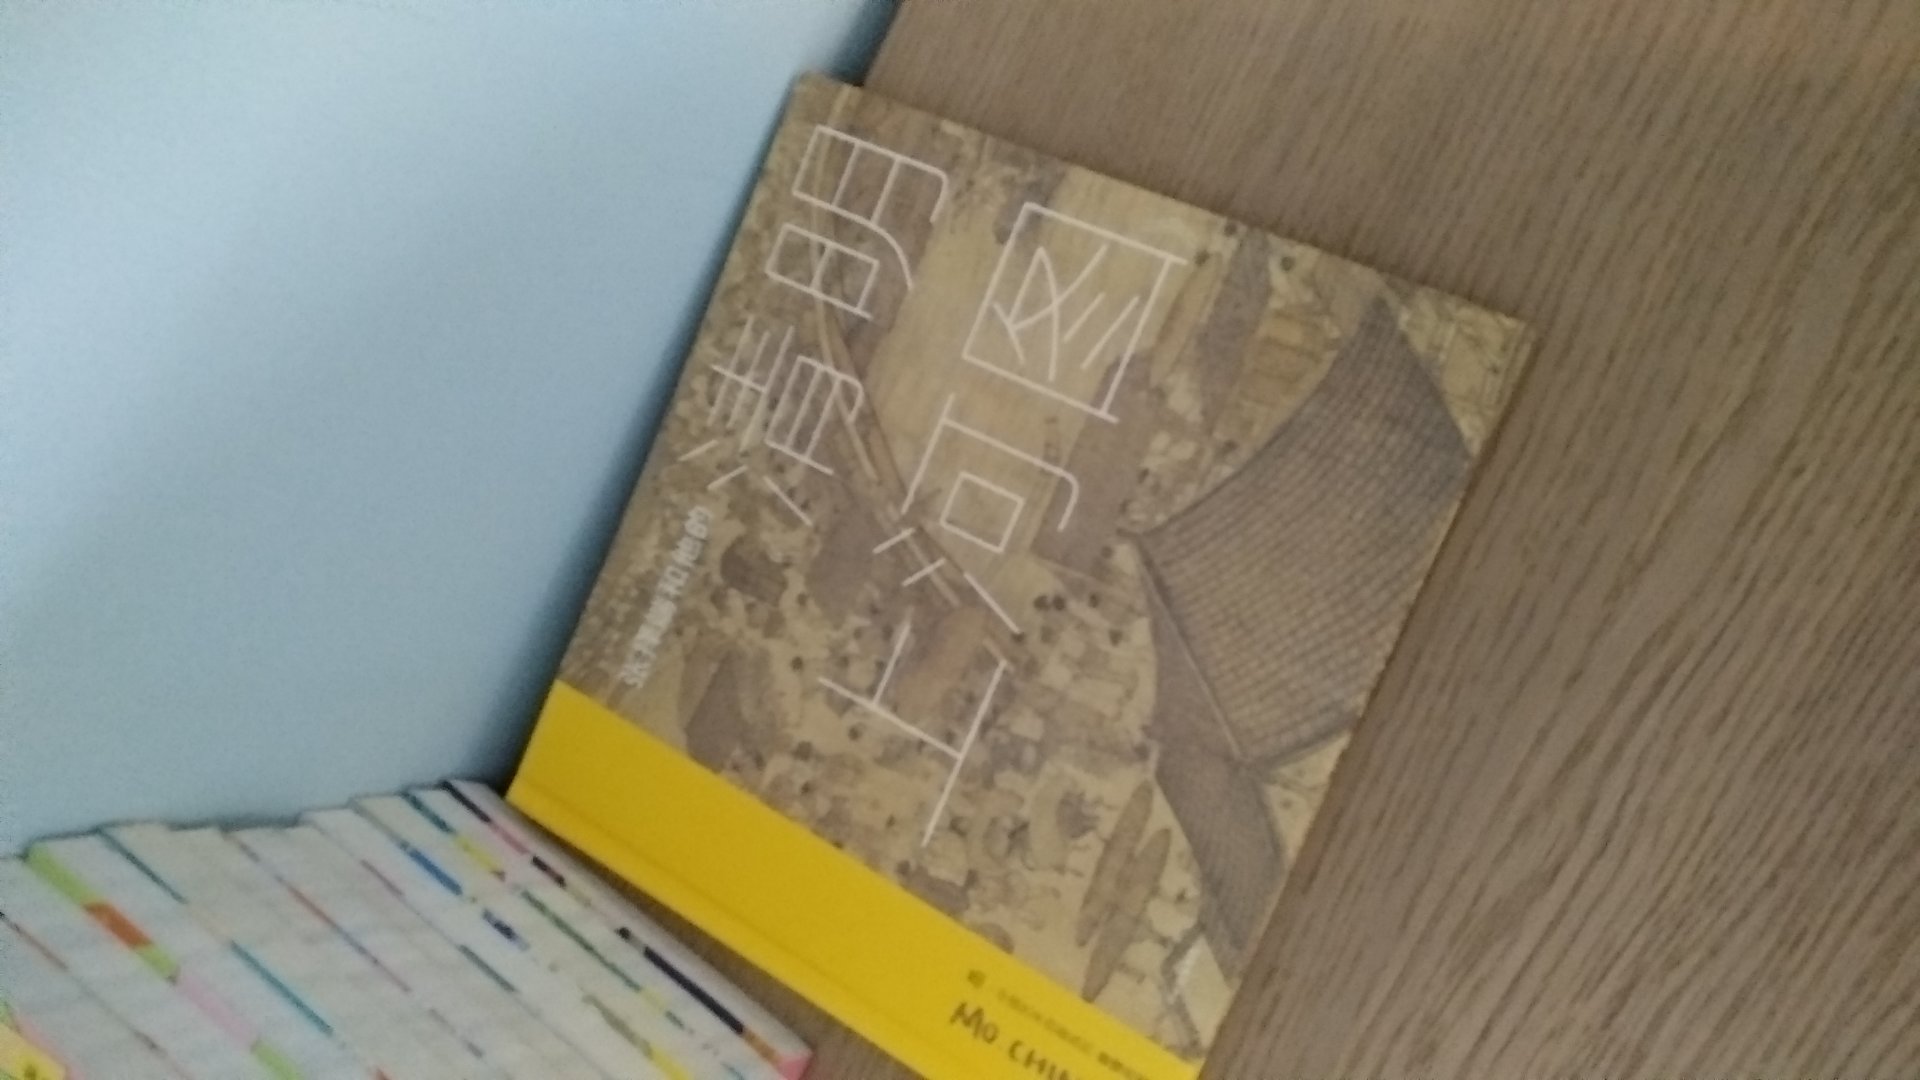 很喜欢，这样的图书应该多出一点介绍中国的文化的书籍。